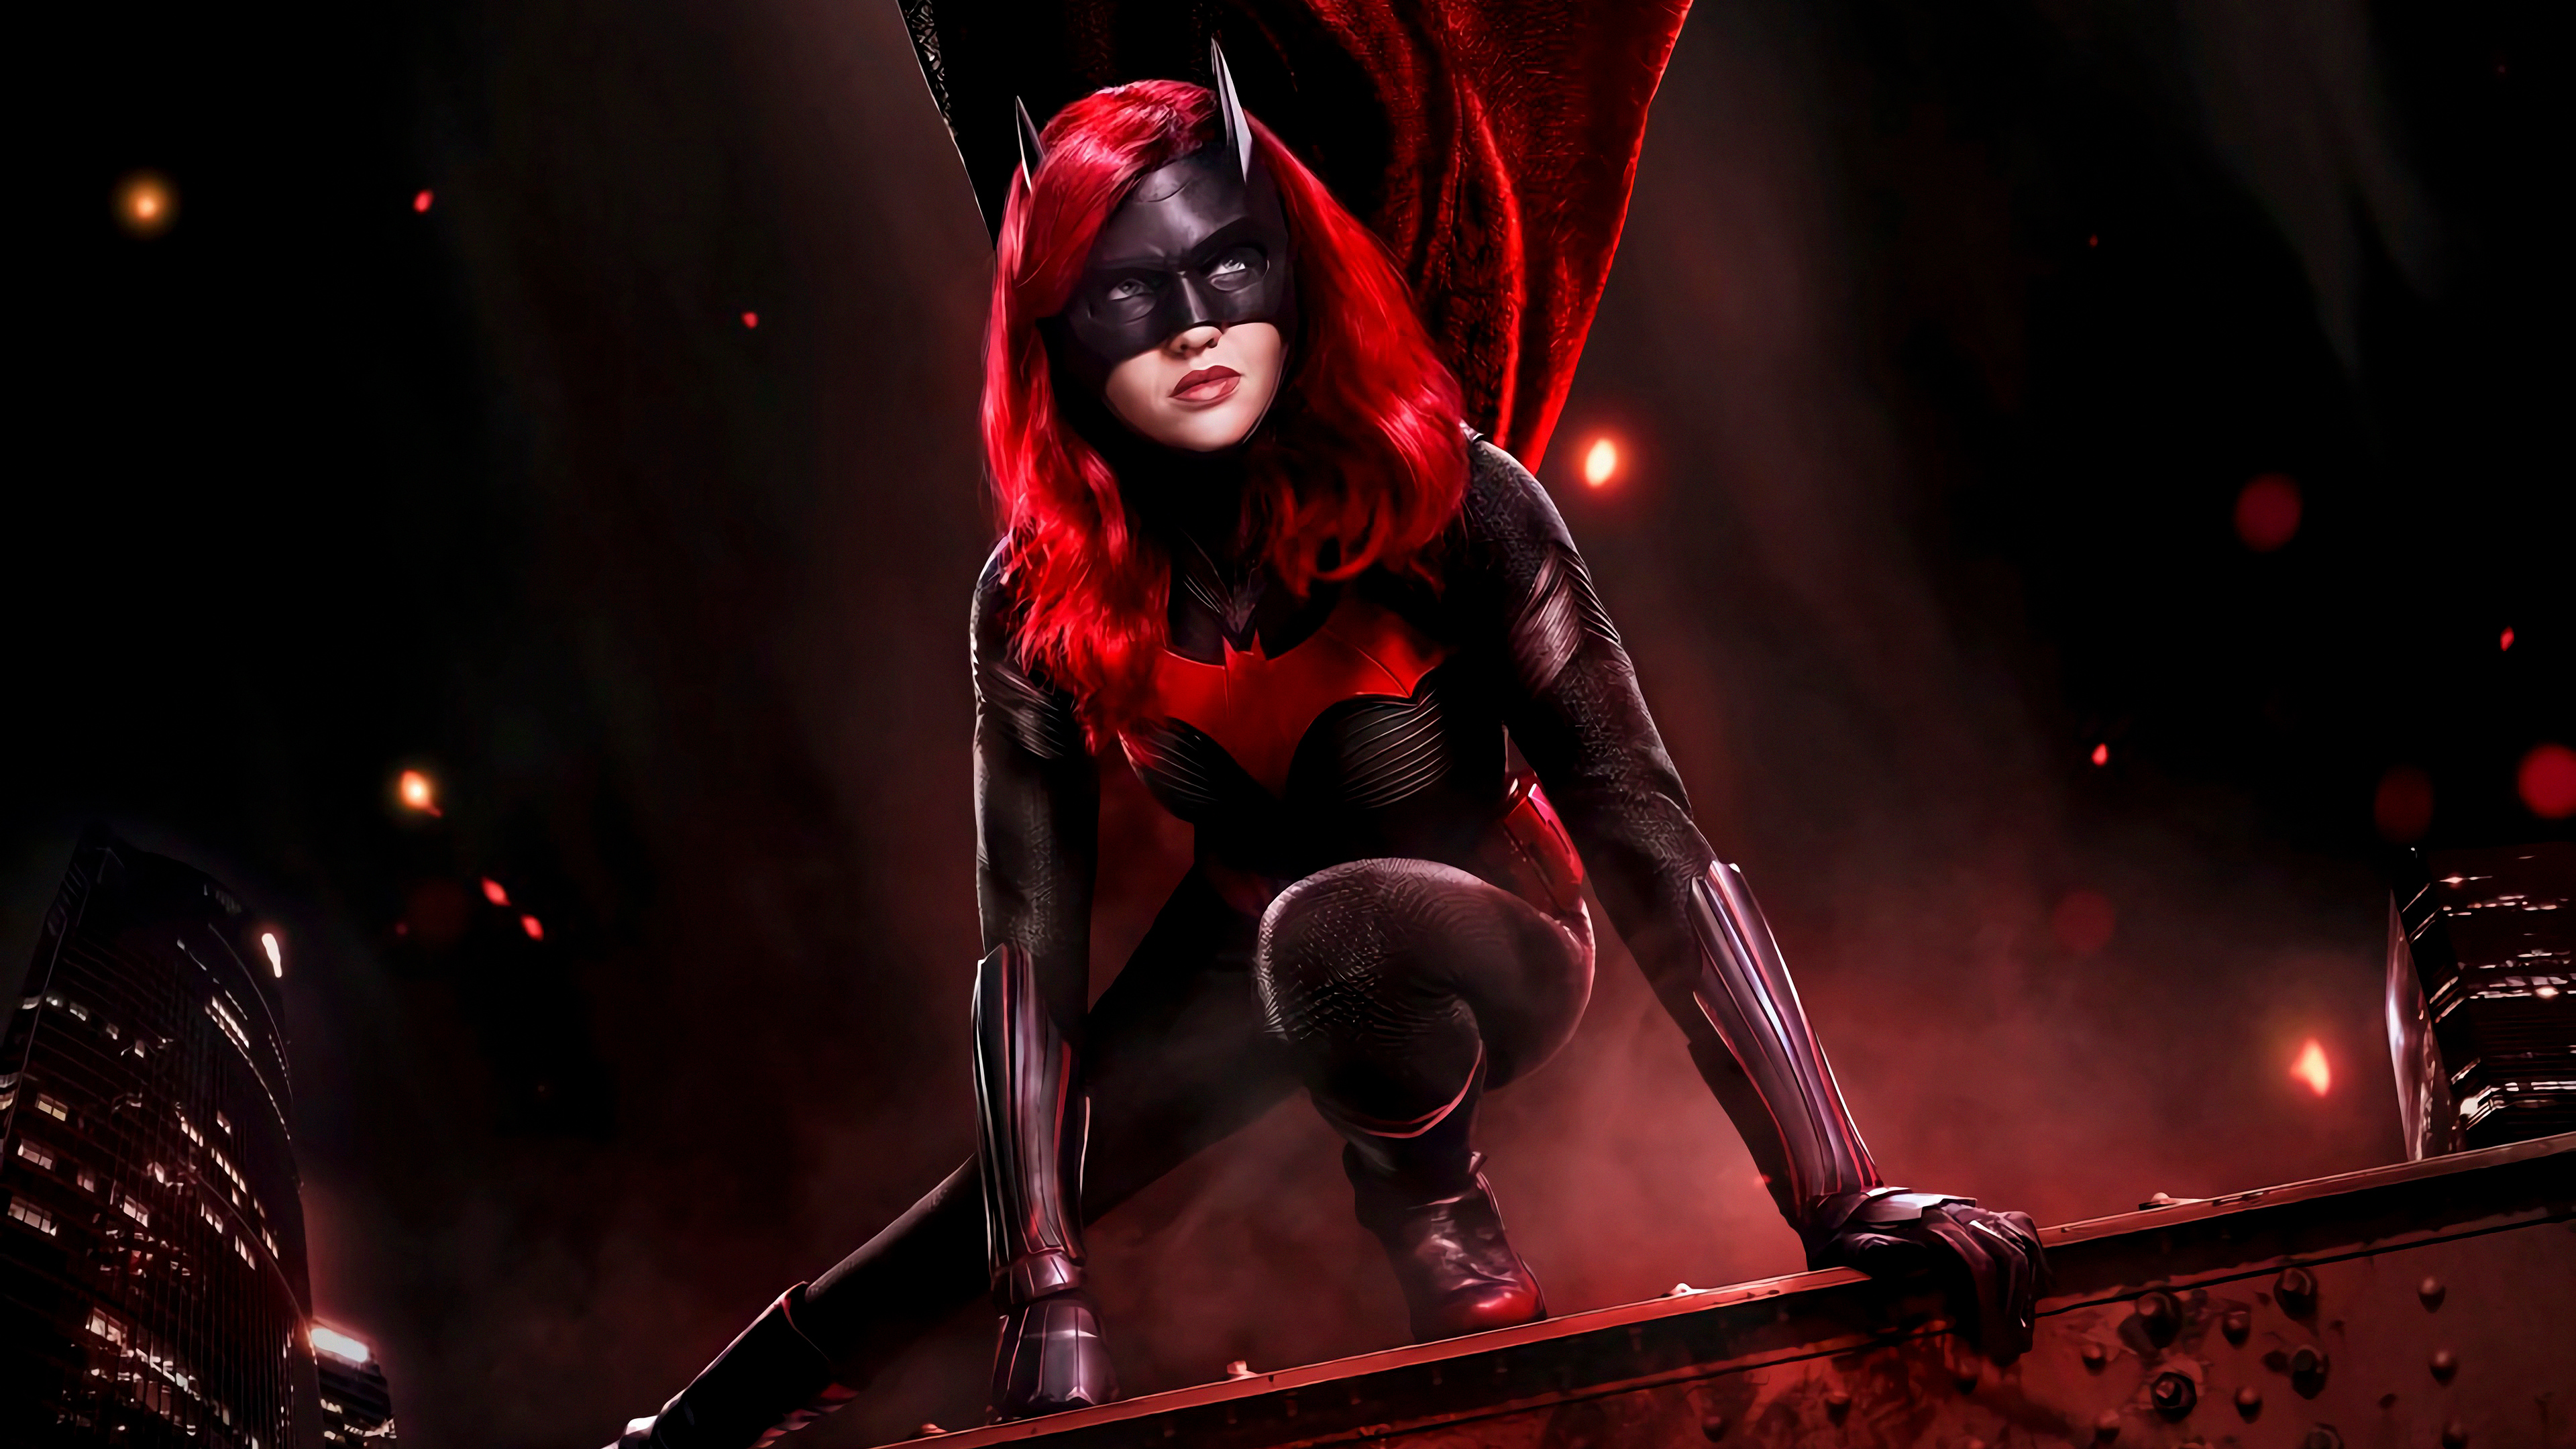 batwoman art 1578251680 - Batwoman Art - Batwoman 4k wallapper